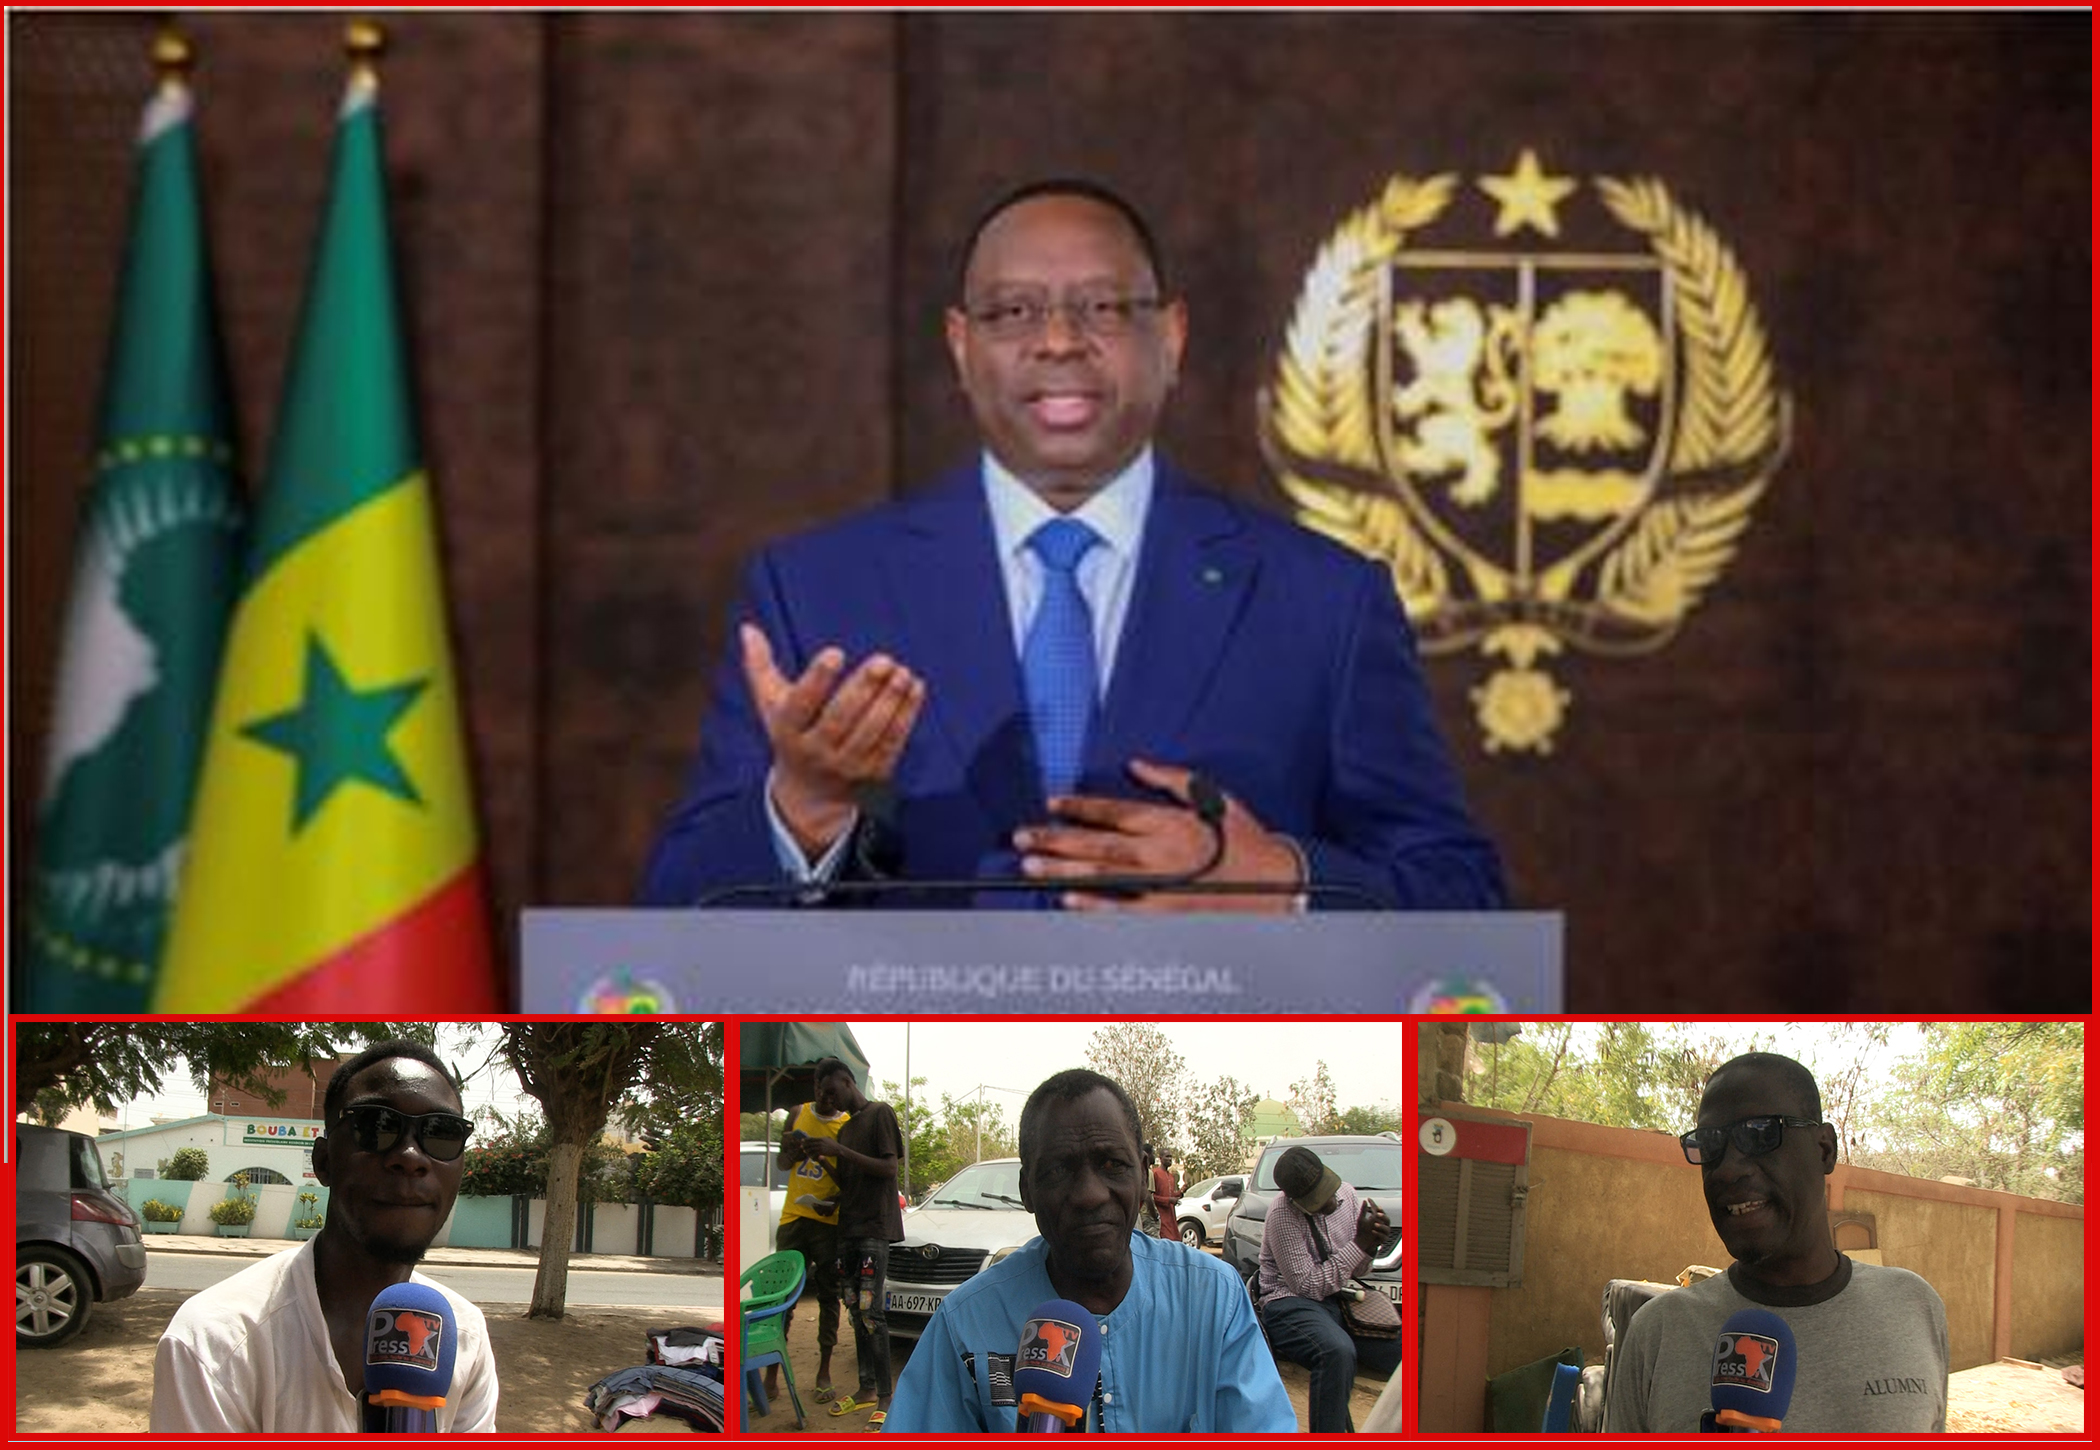 Discours à la nation de Macky Sall: la question du 3e mandat tient en haleine les Sénégalais